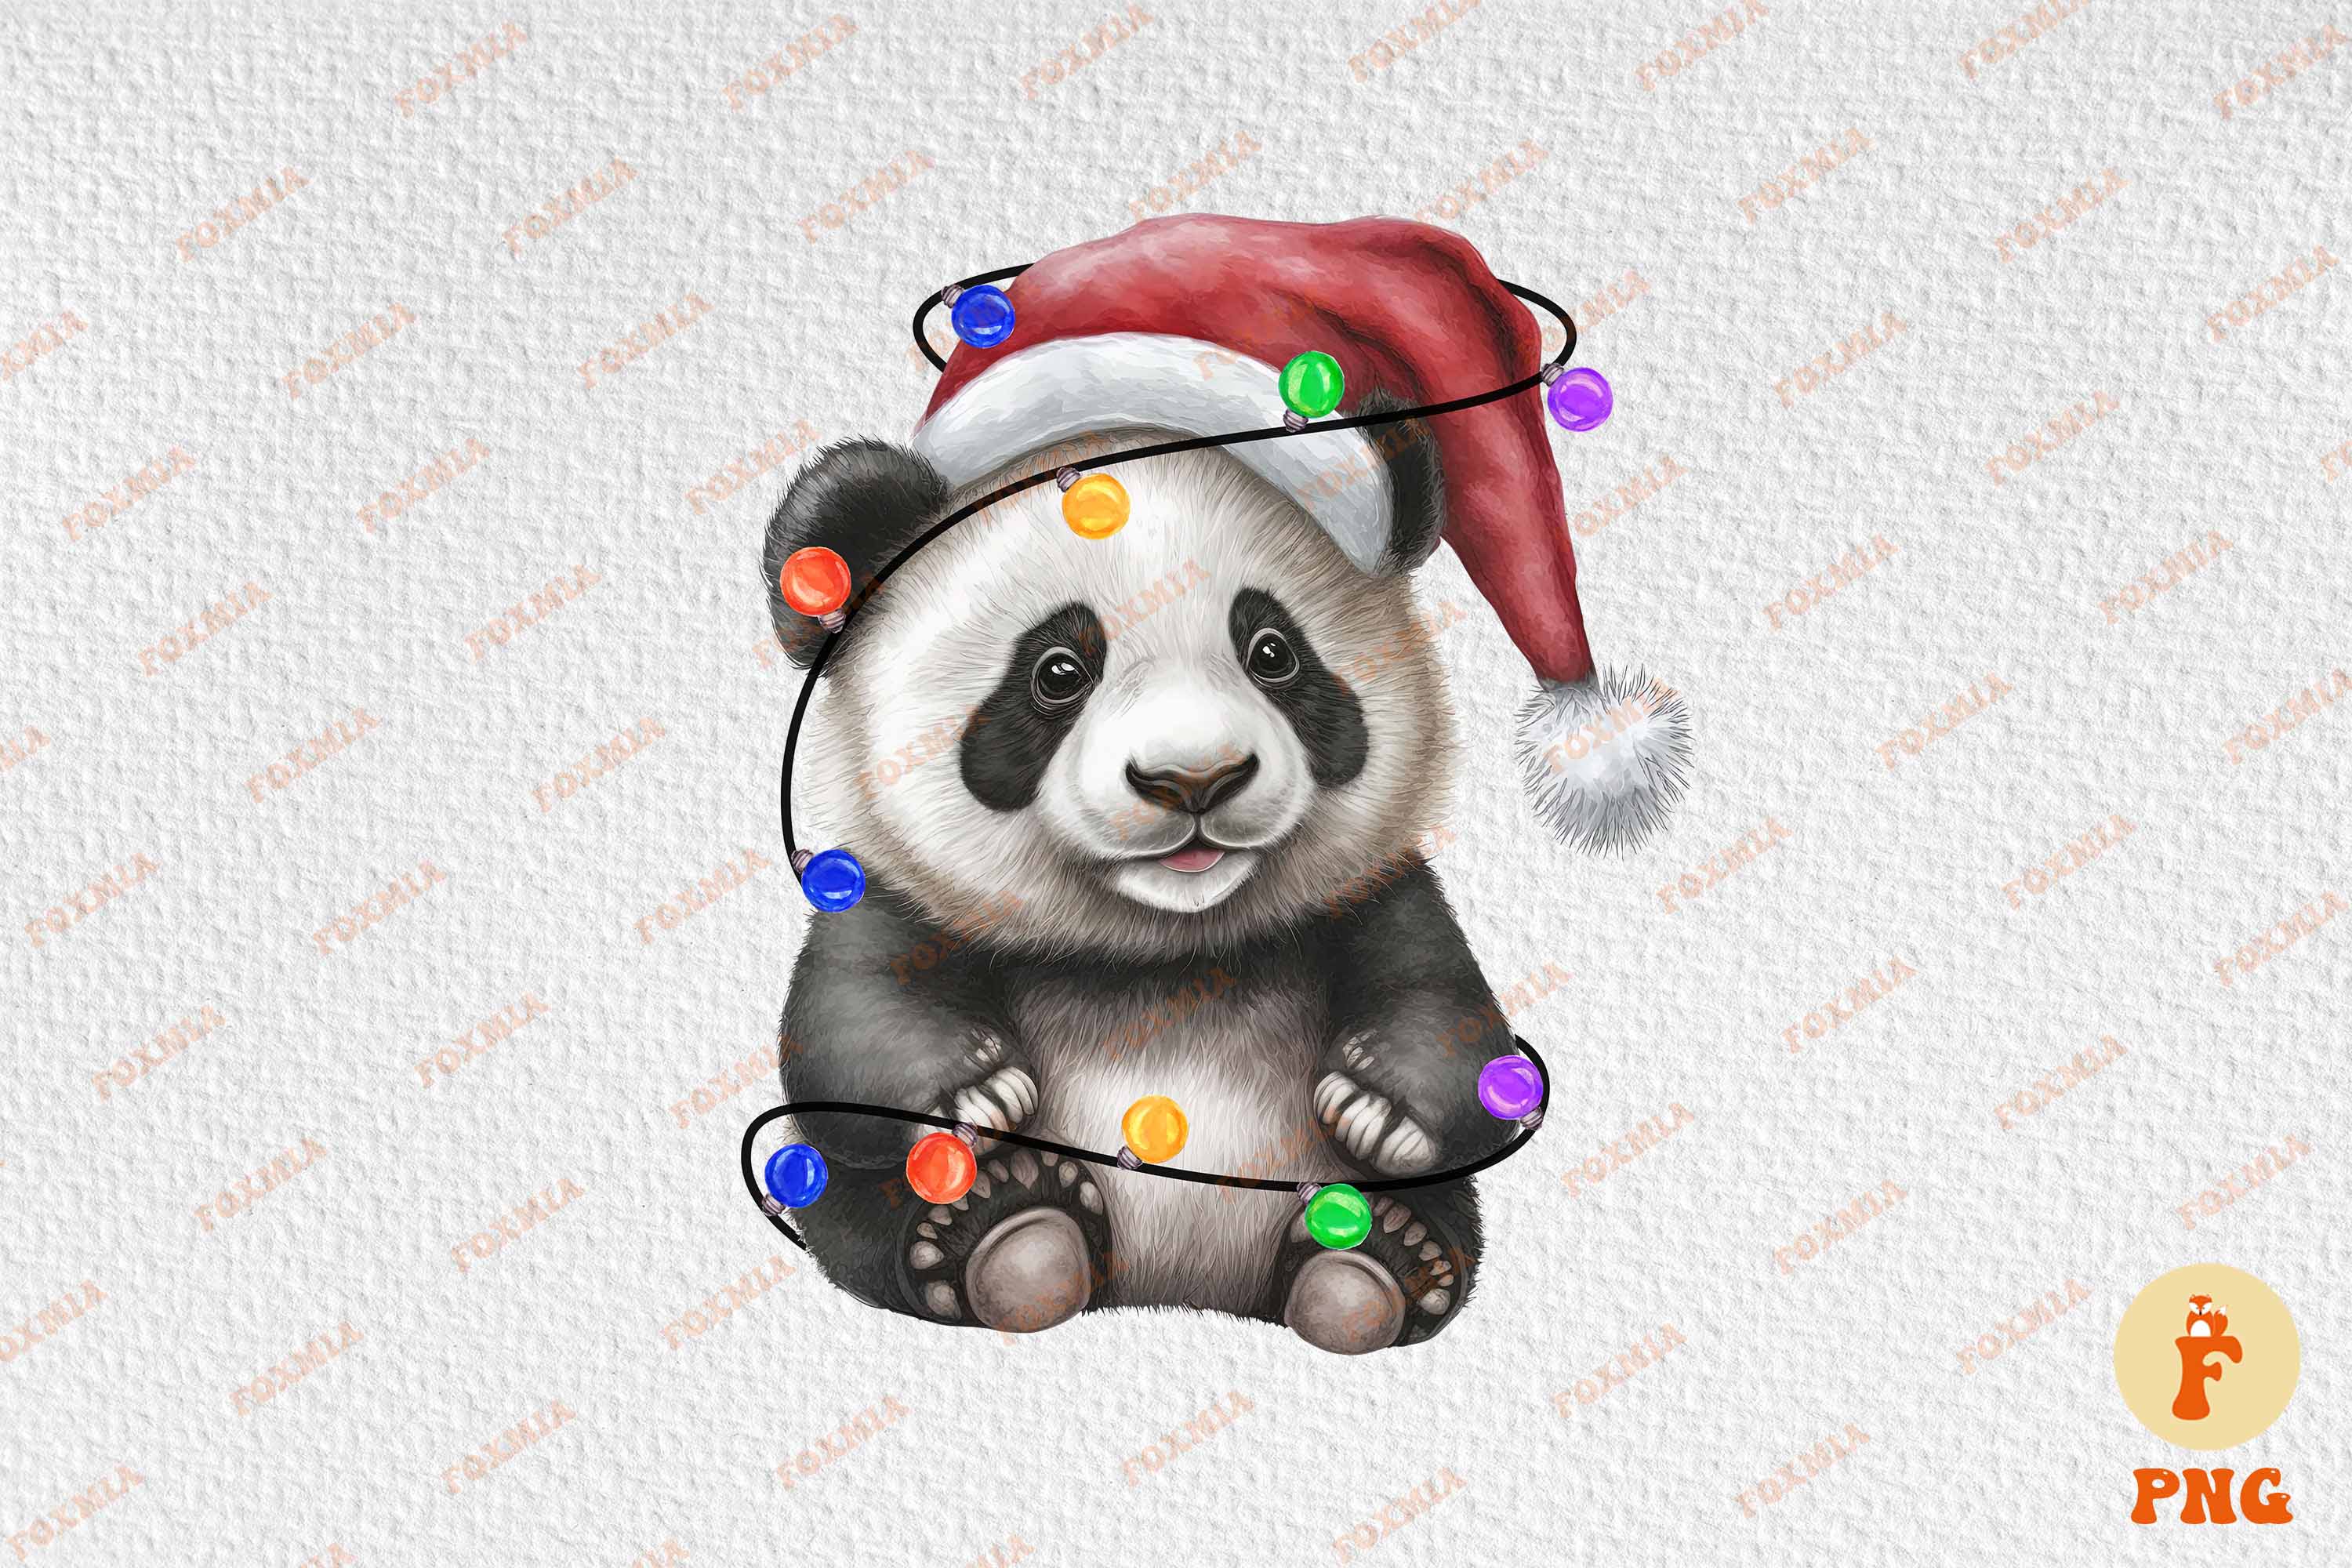 Enchanting image of a panda in a santa hat.